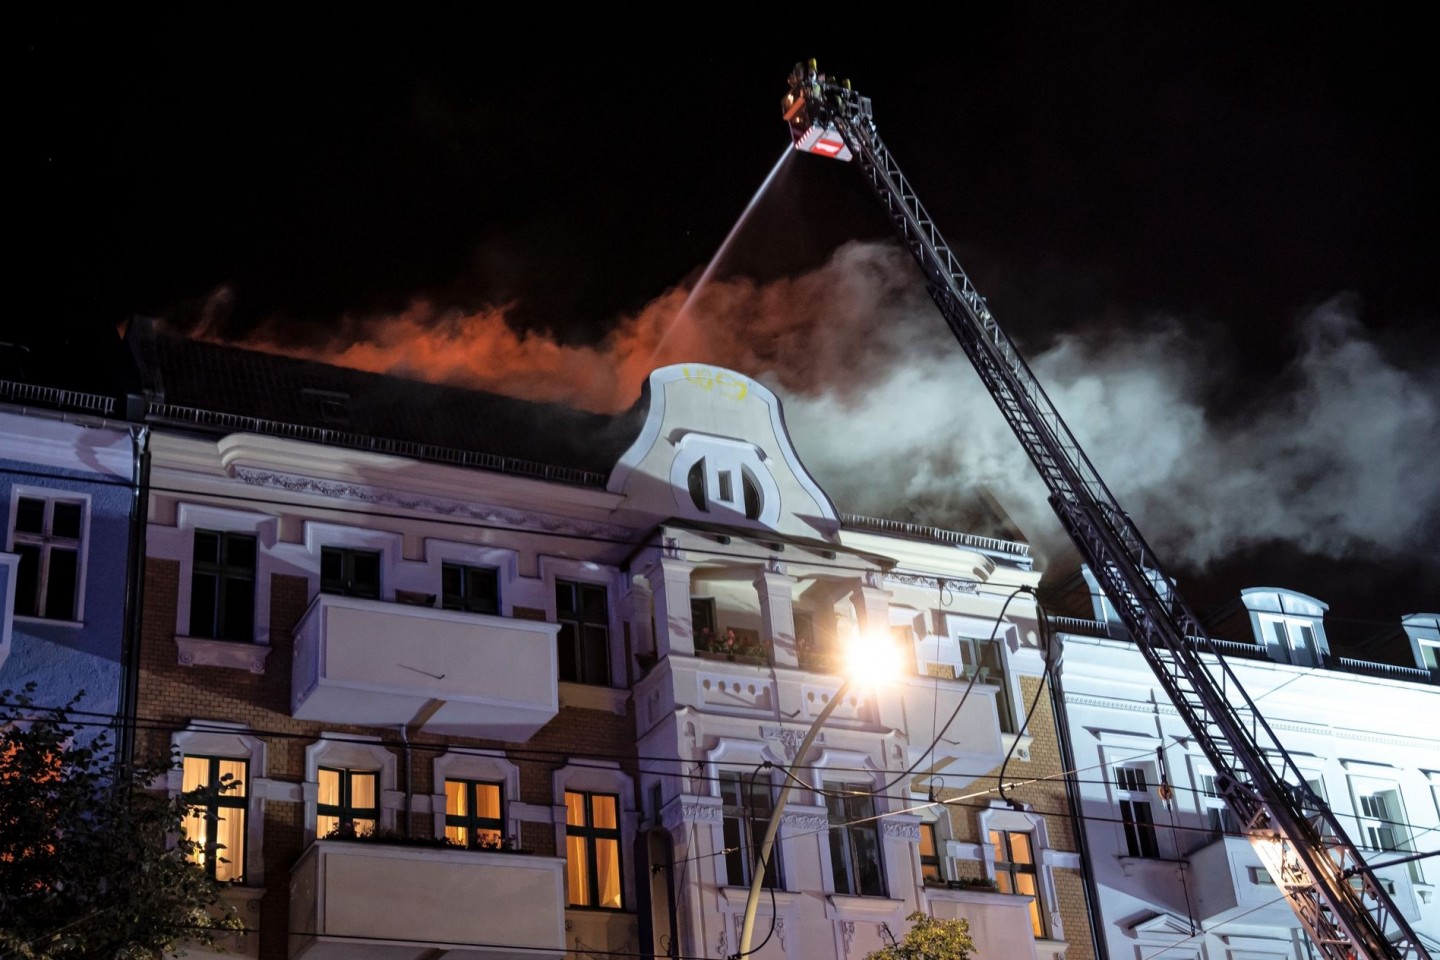 Die Berliner Feuerwehr löscht das Feuer in einem Wohngebäude an der Prenzlauer Promenade in Berlin-Pankow.